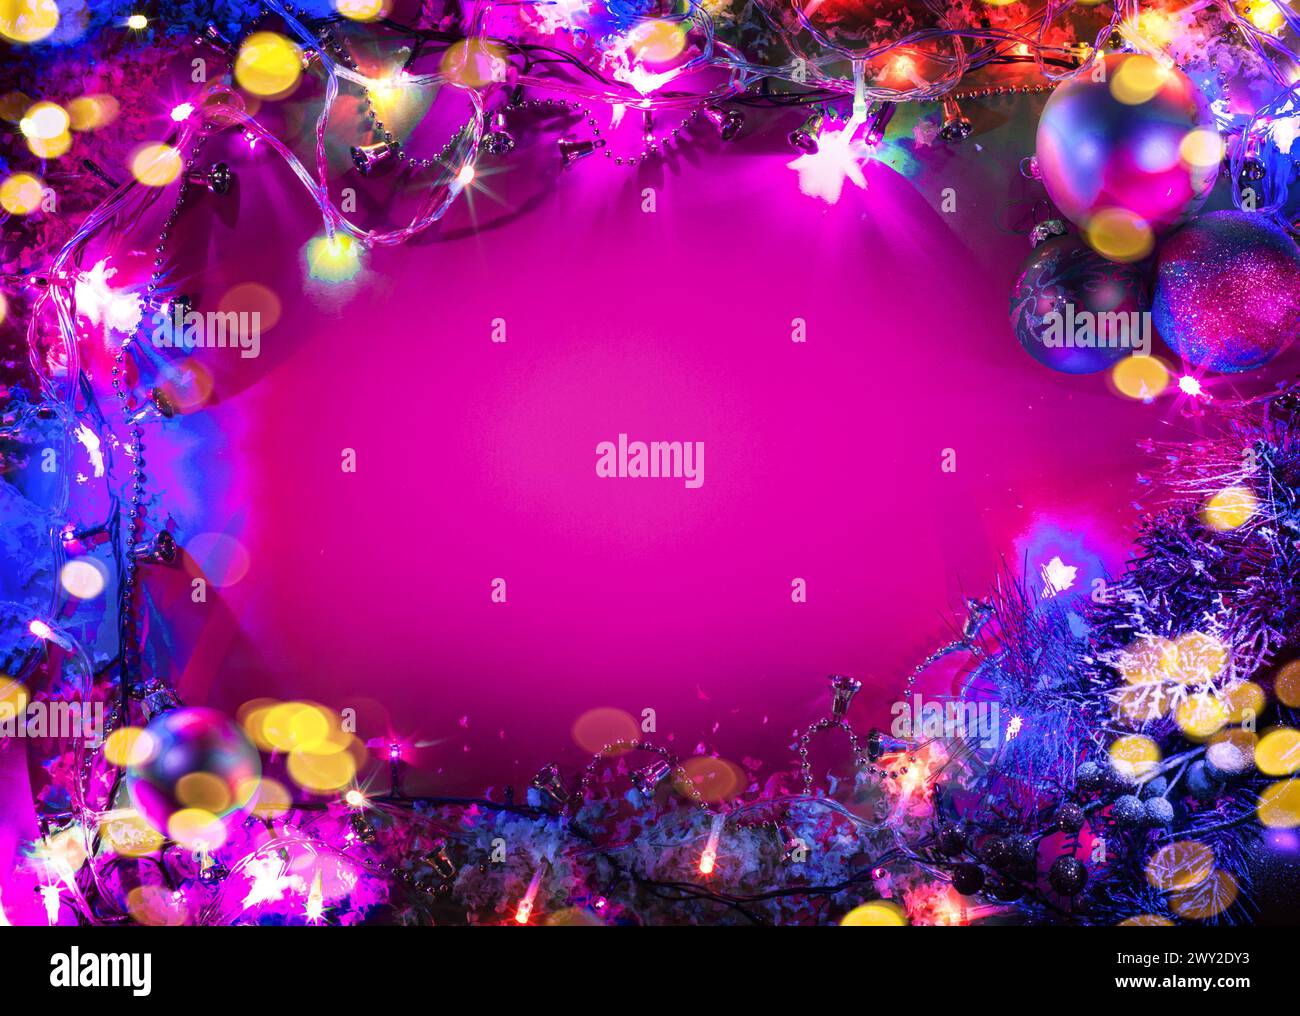 Weihnachtsbaumdekoration mit Feenlichtern, die als Rahmen auf rosafarbenem Hintergrund angeordnet sind. Stockfoto